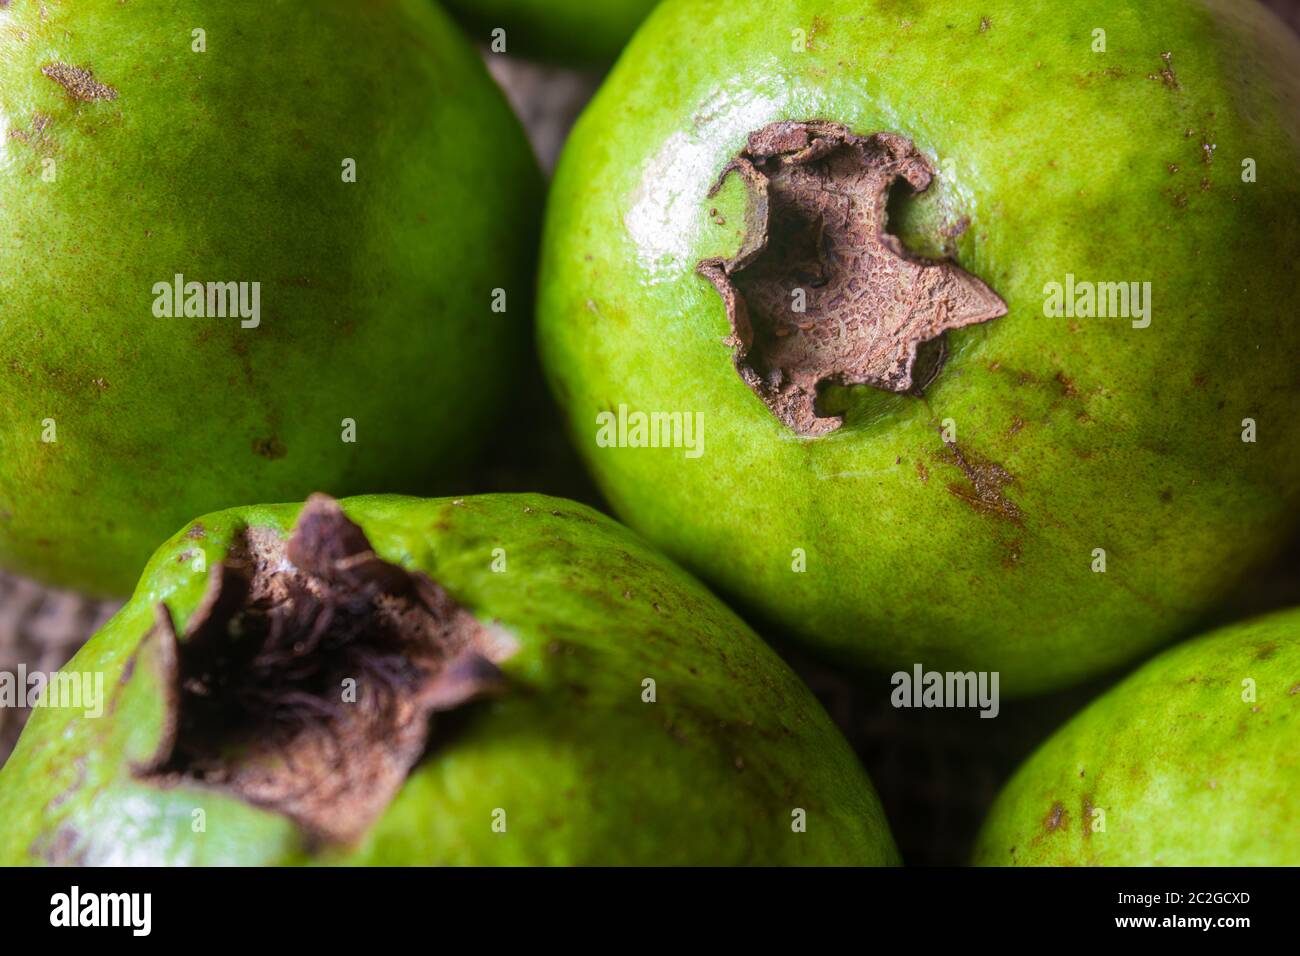 La guayaba es una fruta tropical rica en fibra dietética y vitamina C. Foto de stock